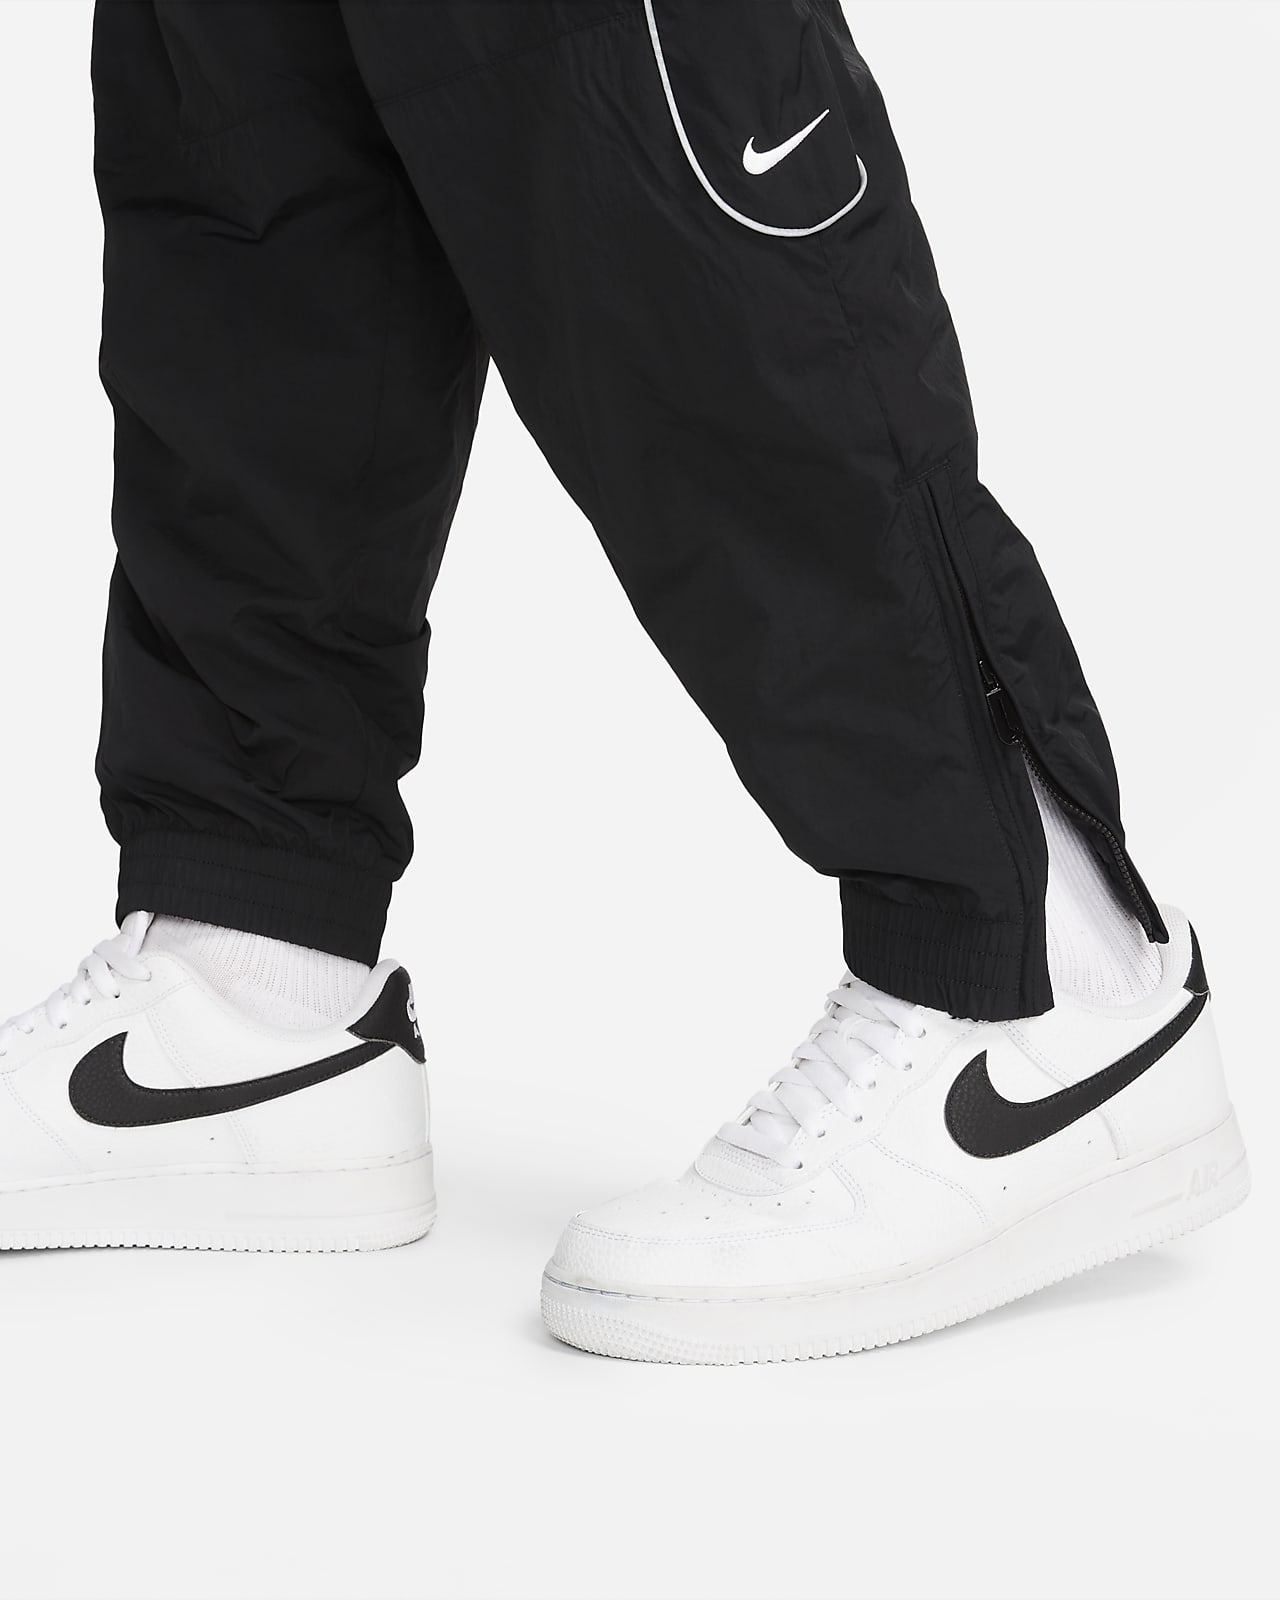 Vêtement Nike - Pull-Over + Pantalon Jogging Habit Couleur Jaune et Noir  AY00145 - Sodishop